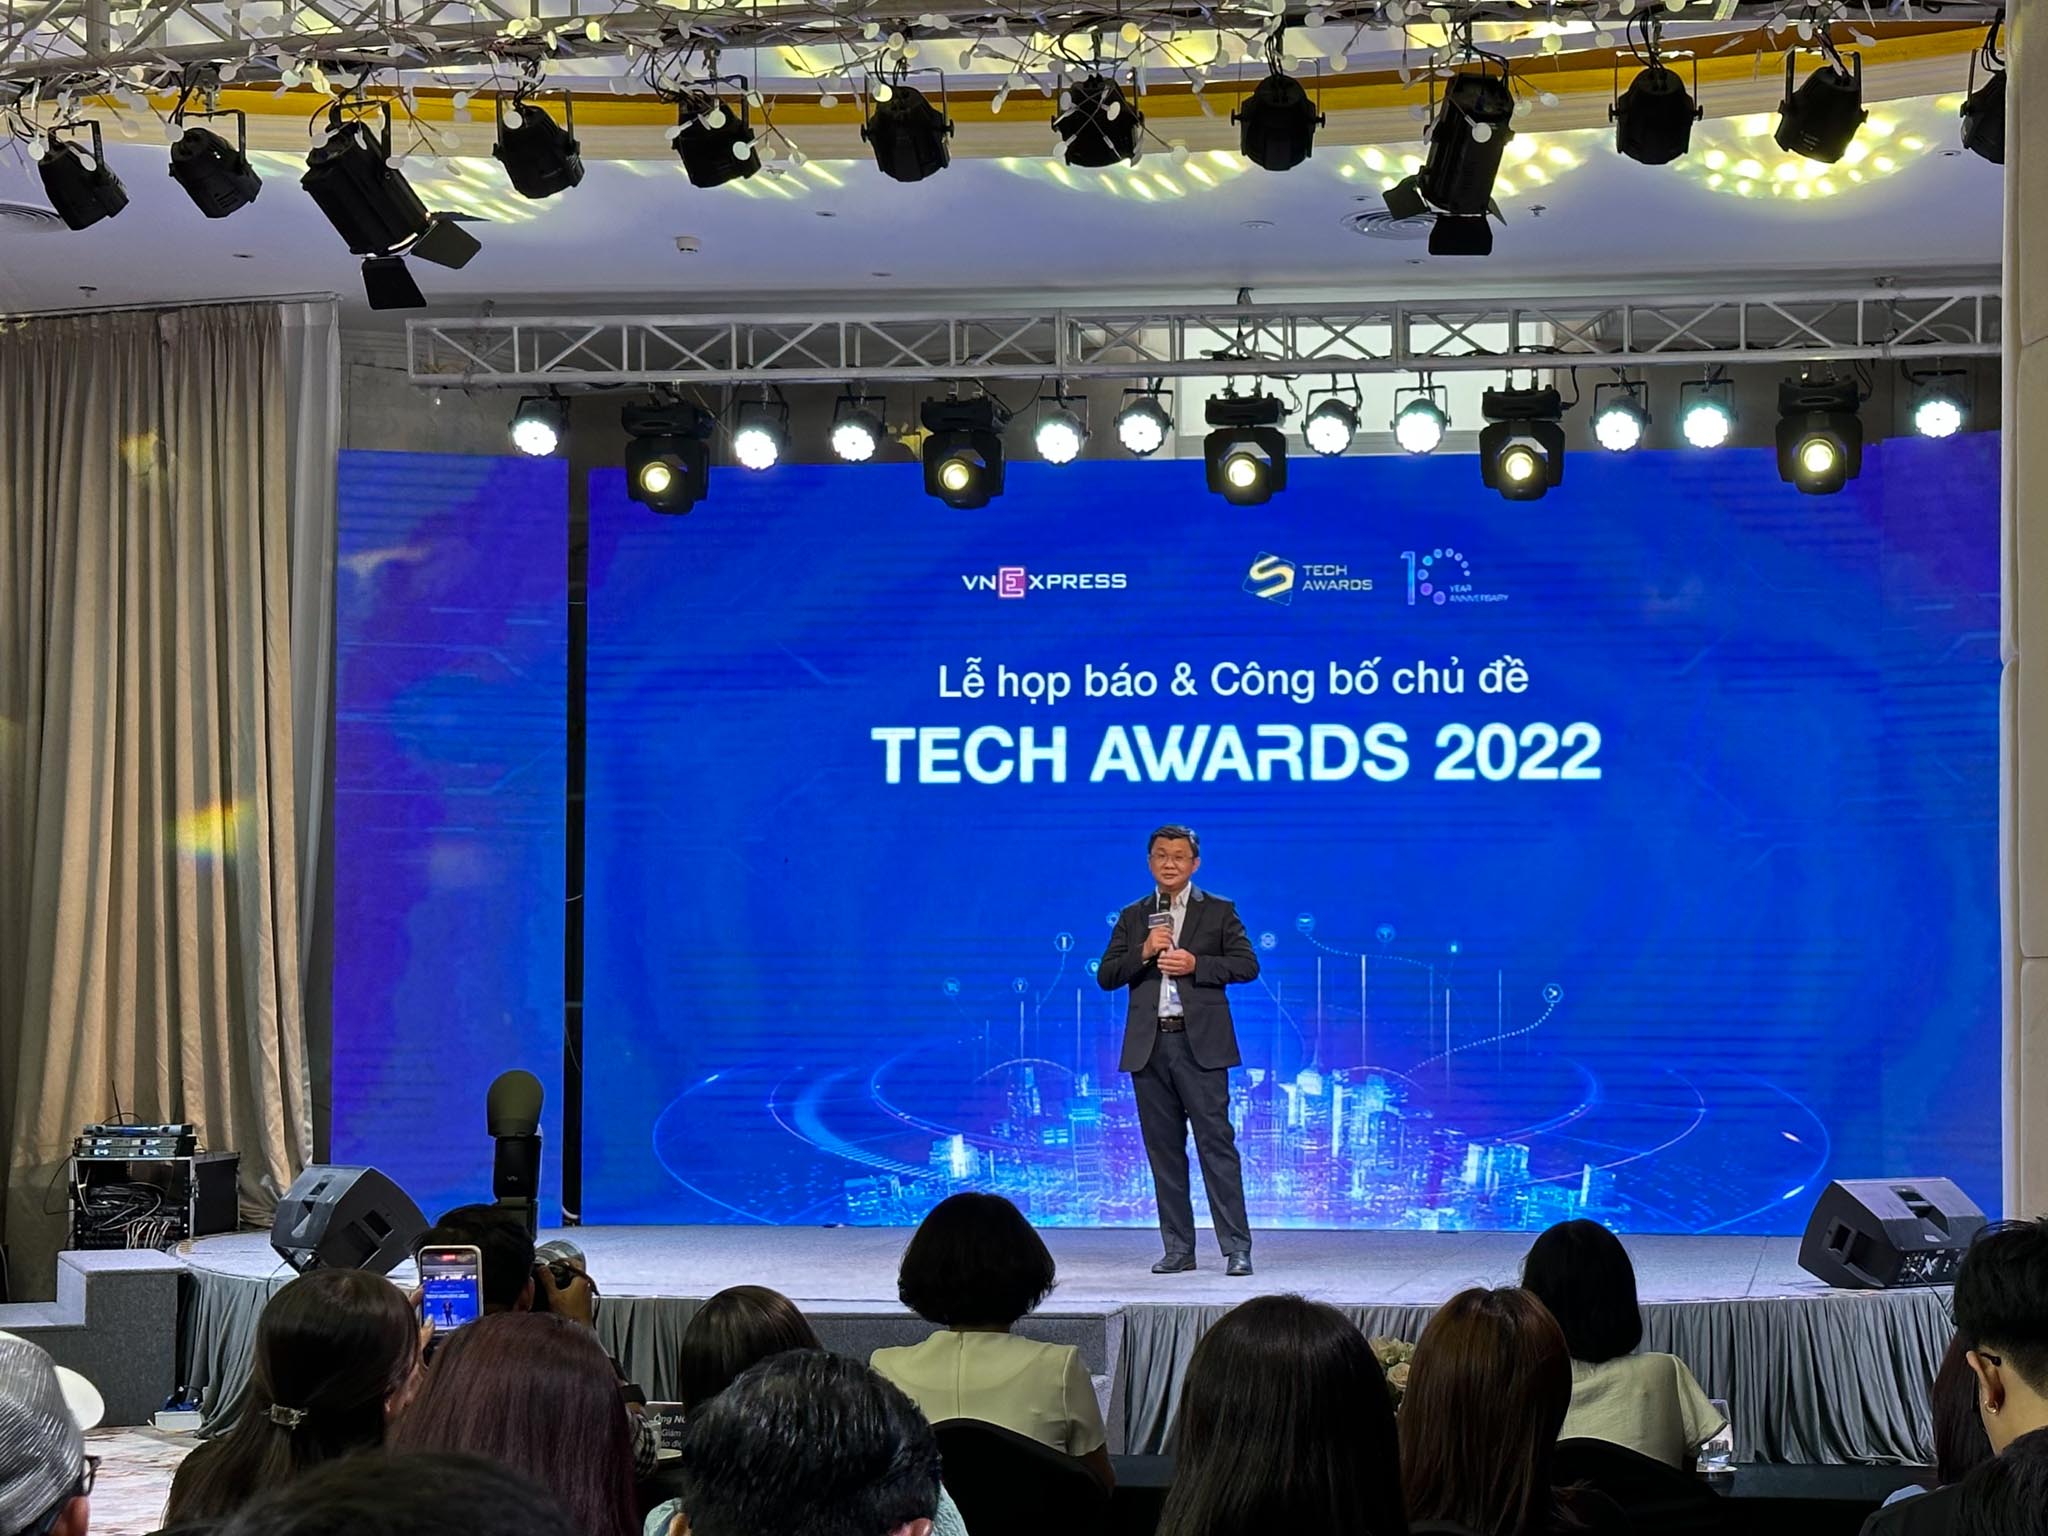 Họp báo và Công bố chủ đề Tech Awards 2022